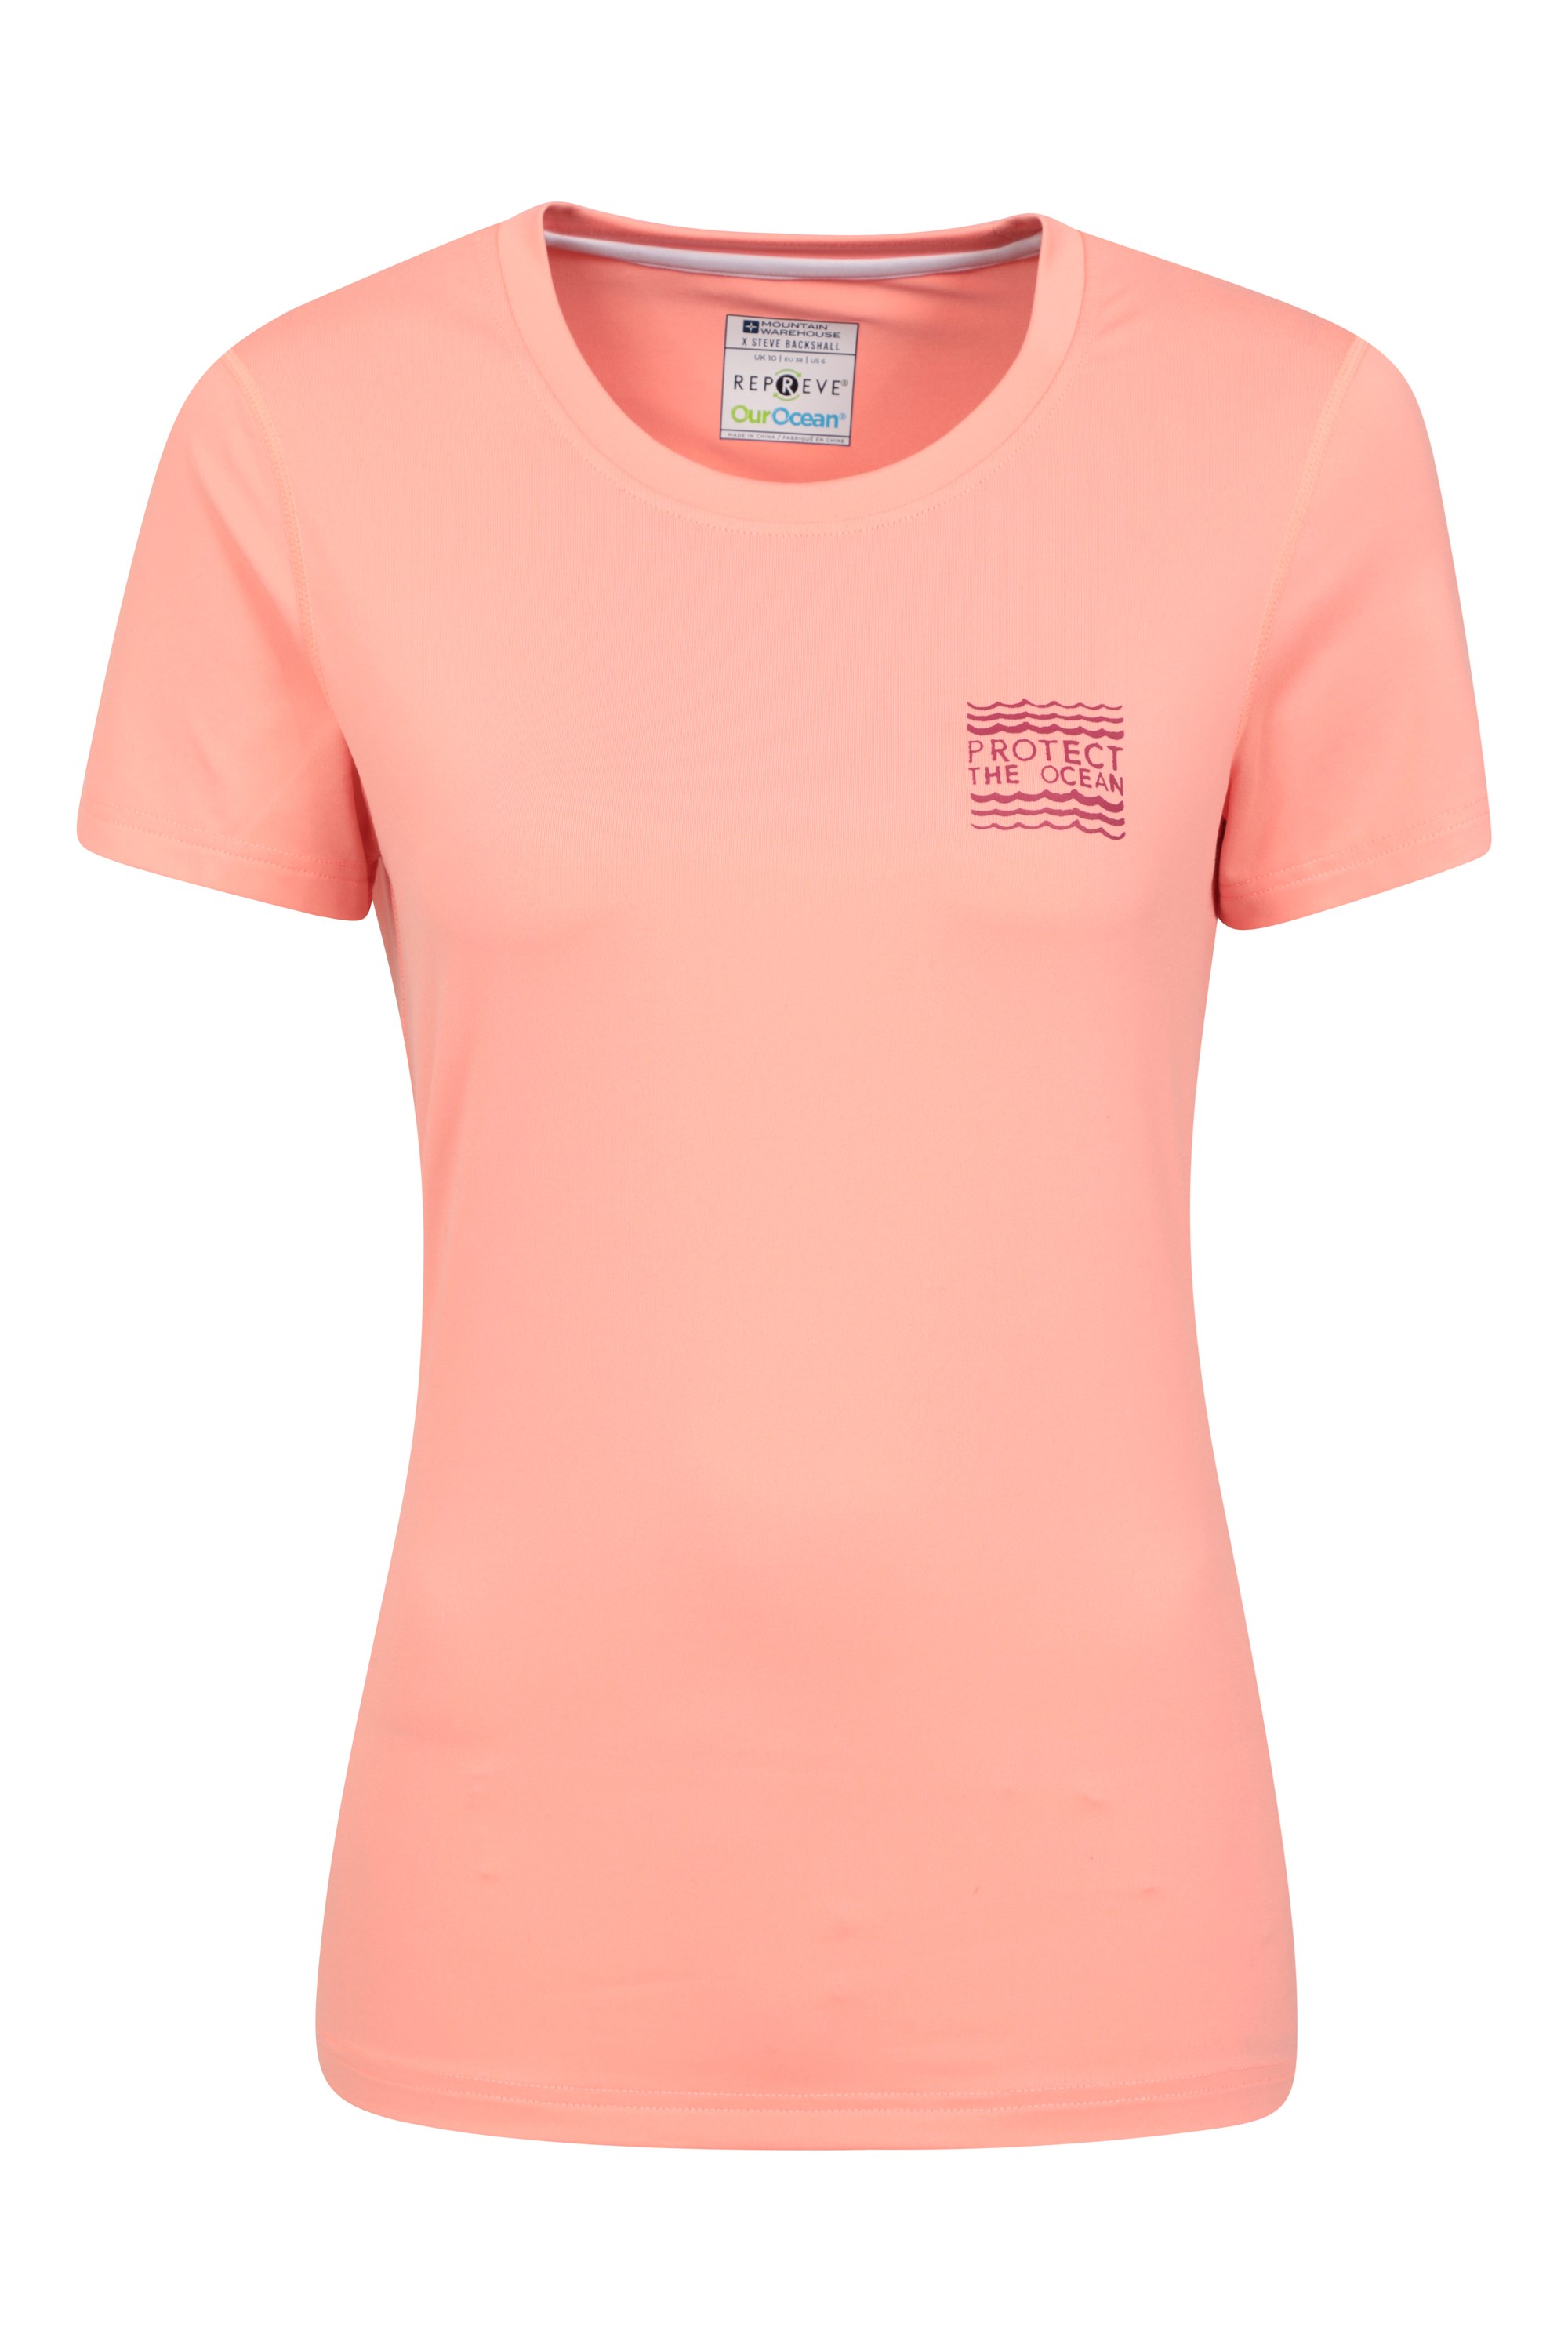 Steve Backshall Adventure T-shirt damski - Pink